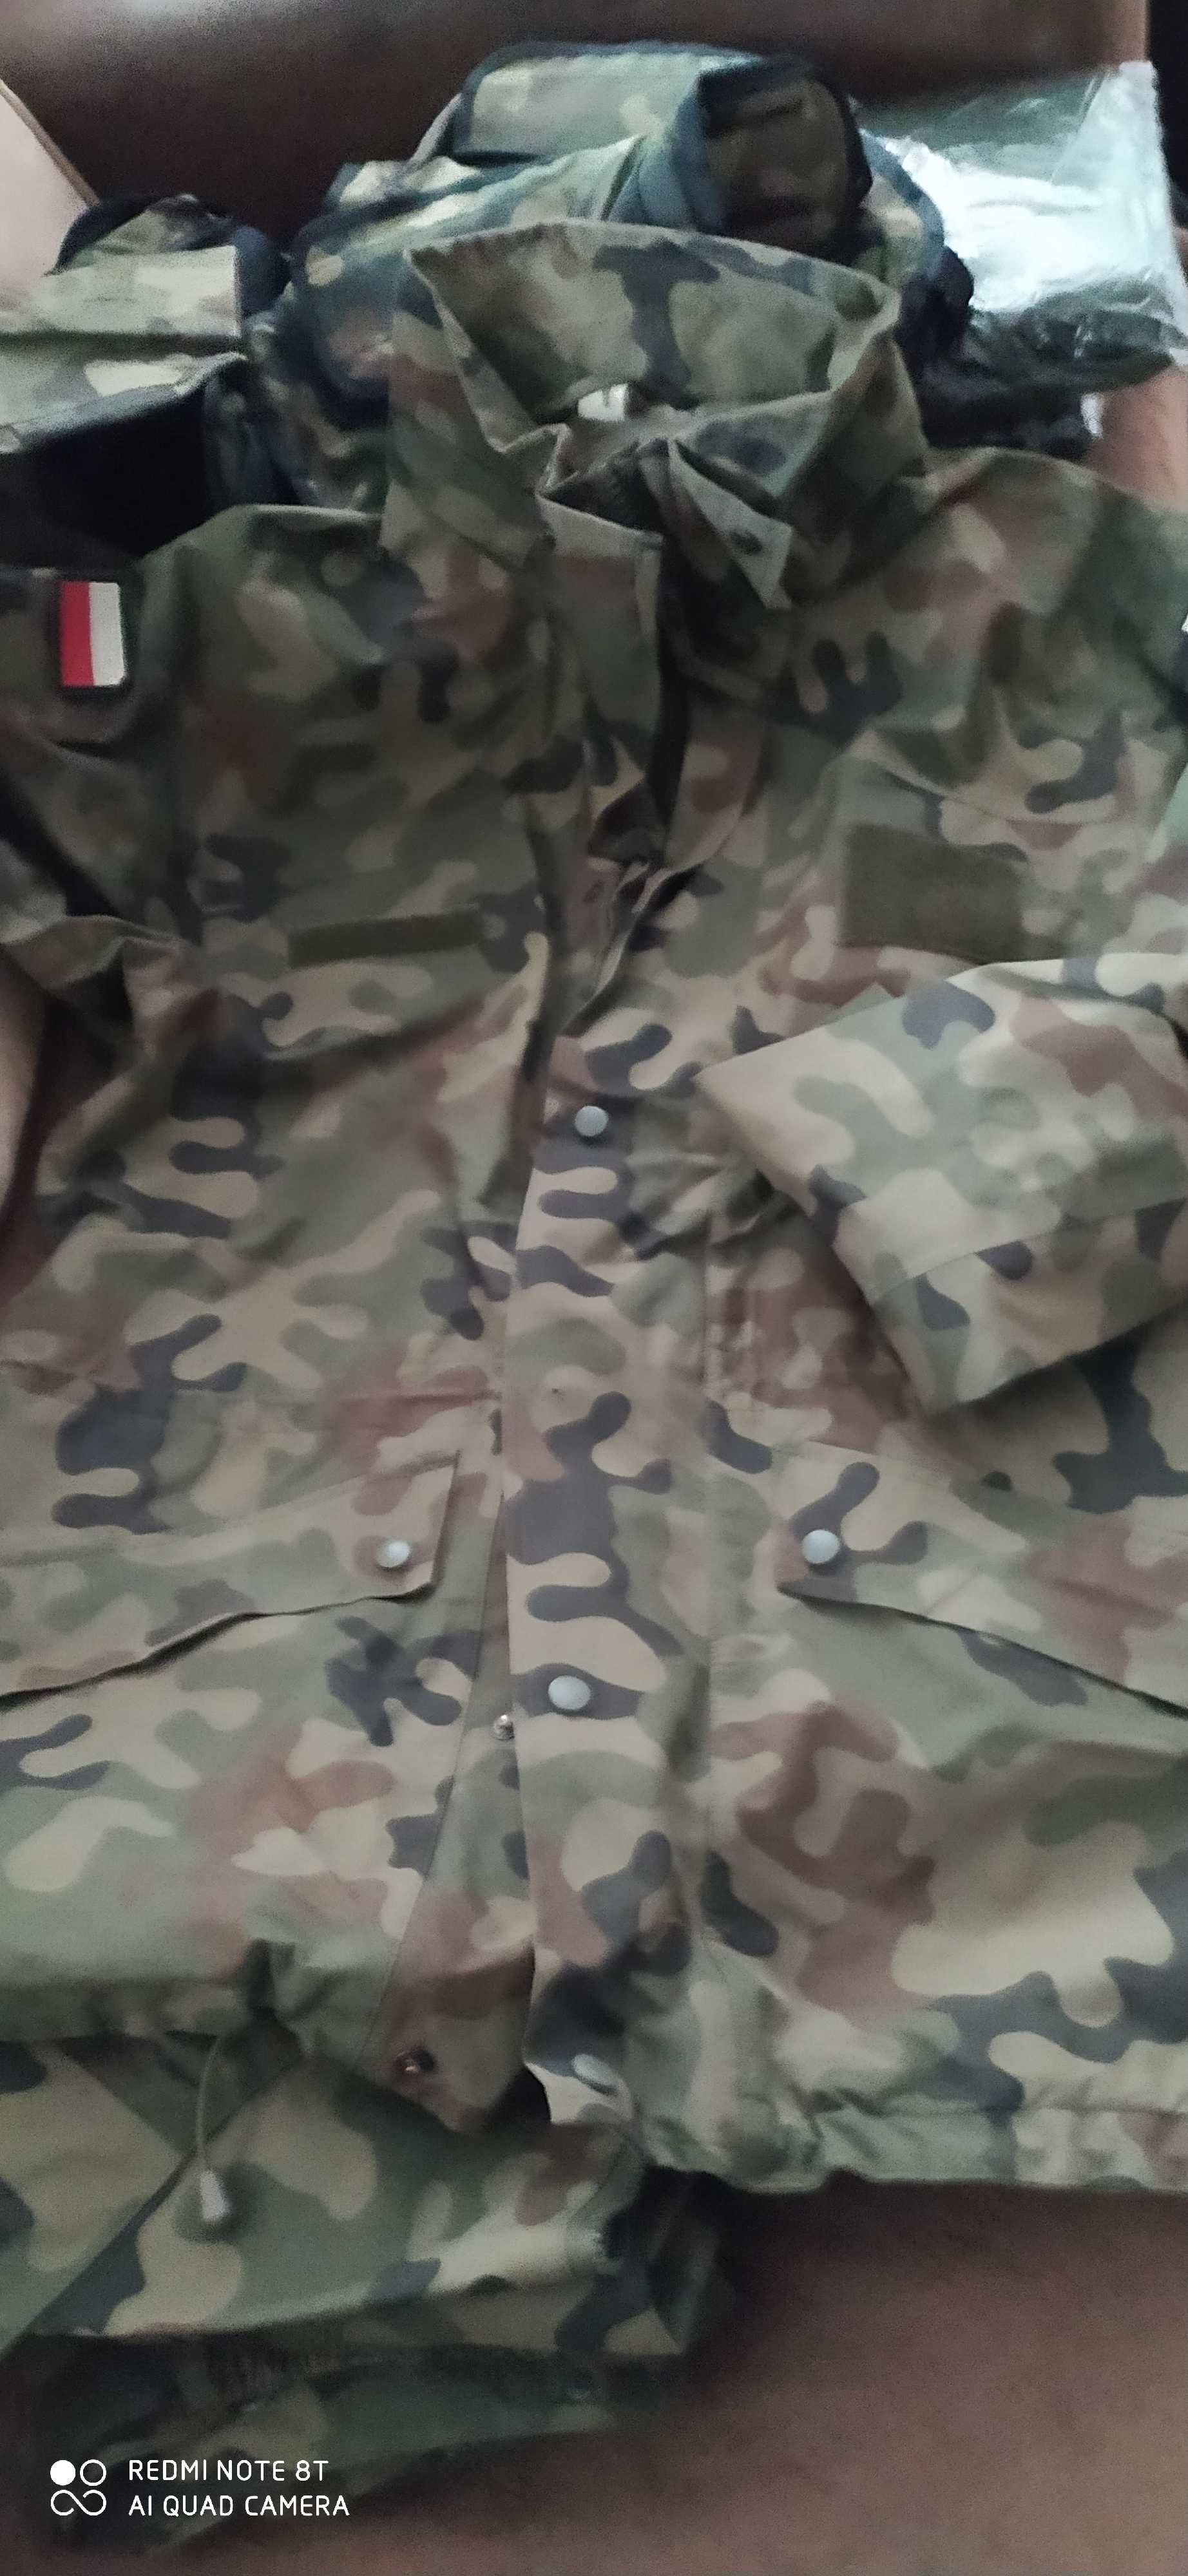 ubranie ochronne wojskowe wzór 128 mon kurtka spodnie używane